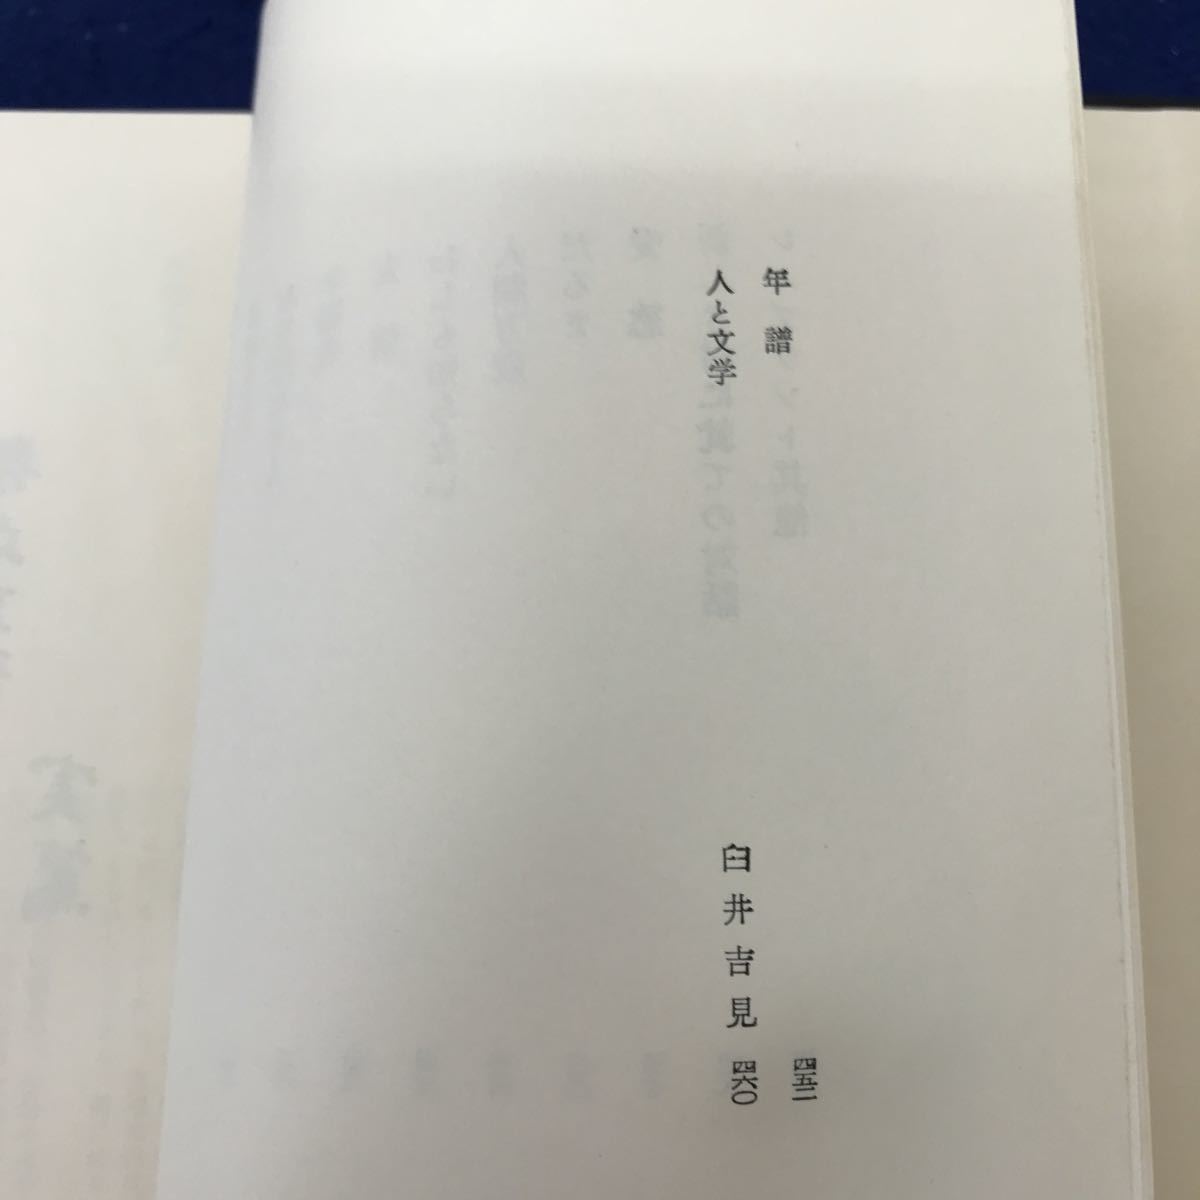 I13-033 день текст . полное собрание сочинений 20 Mushakoji Saneatsu сборник .. книжный магазин 